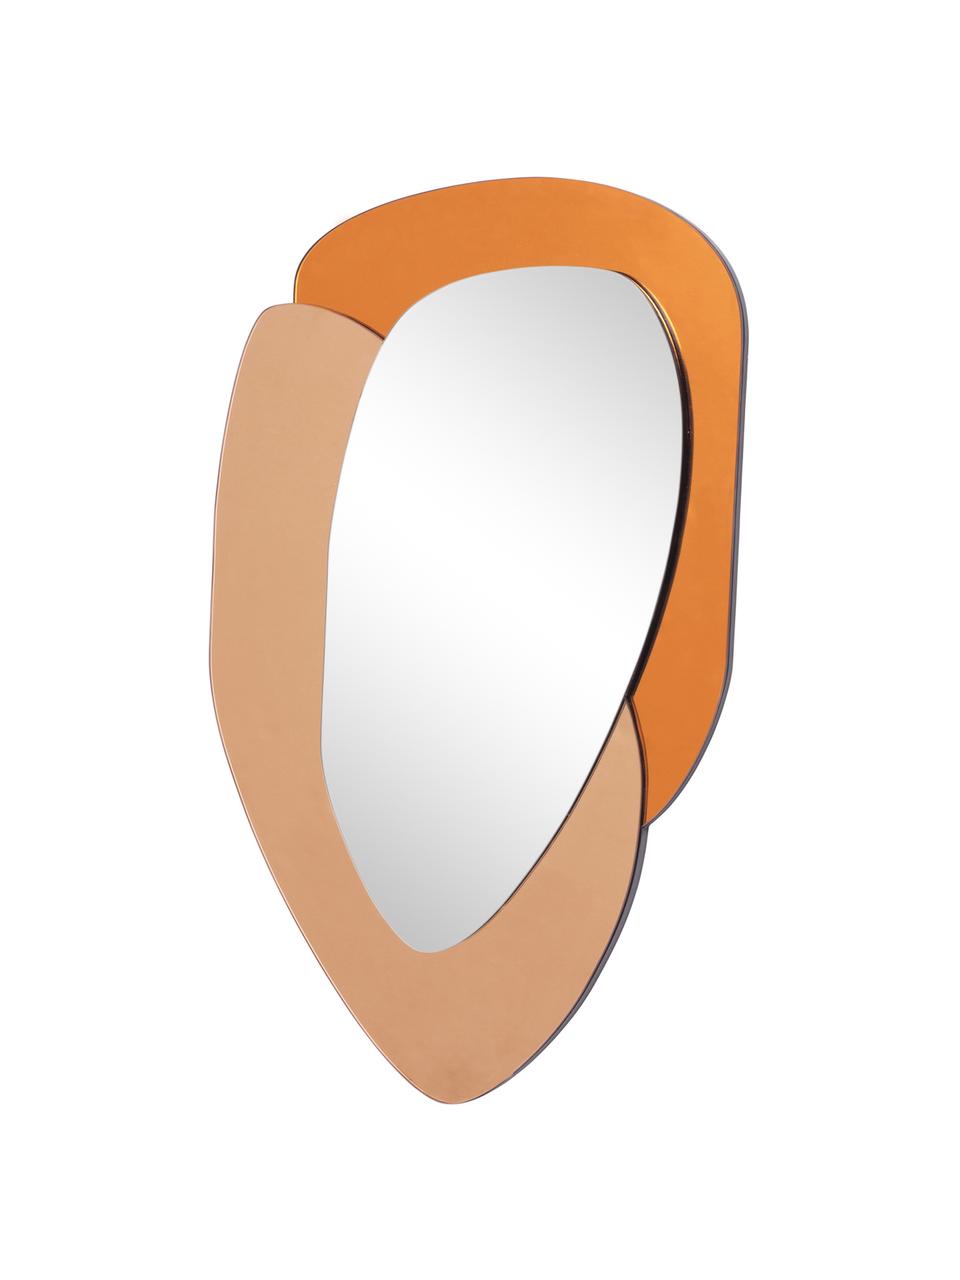 Nástěnné zrcadlo s rámem z barevného skla Layer, Oranžová, karamelově hnědá, zrcadlo